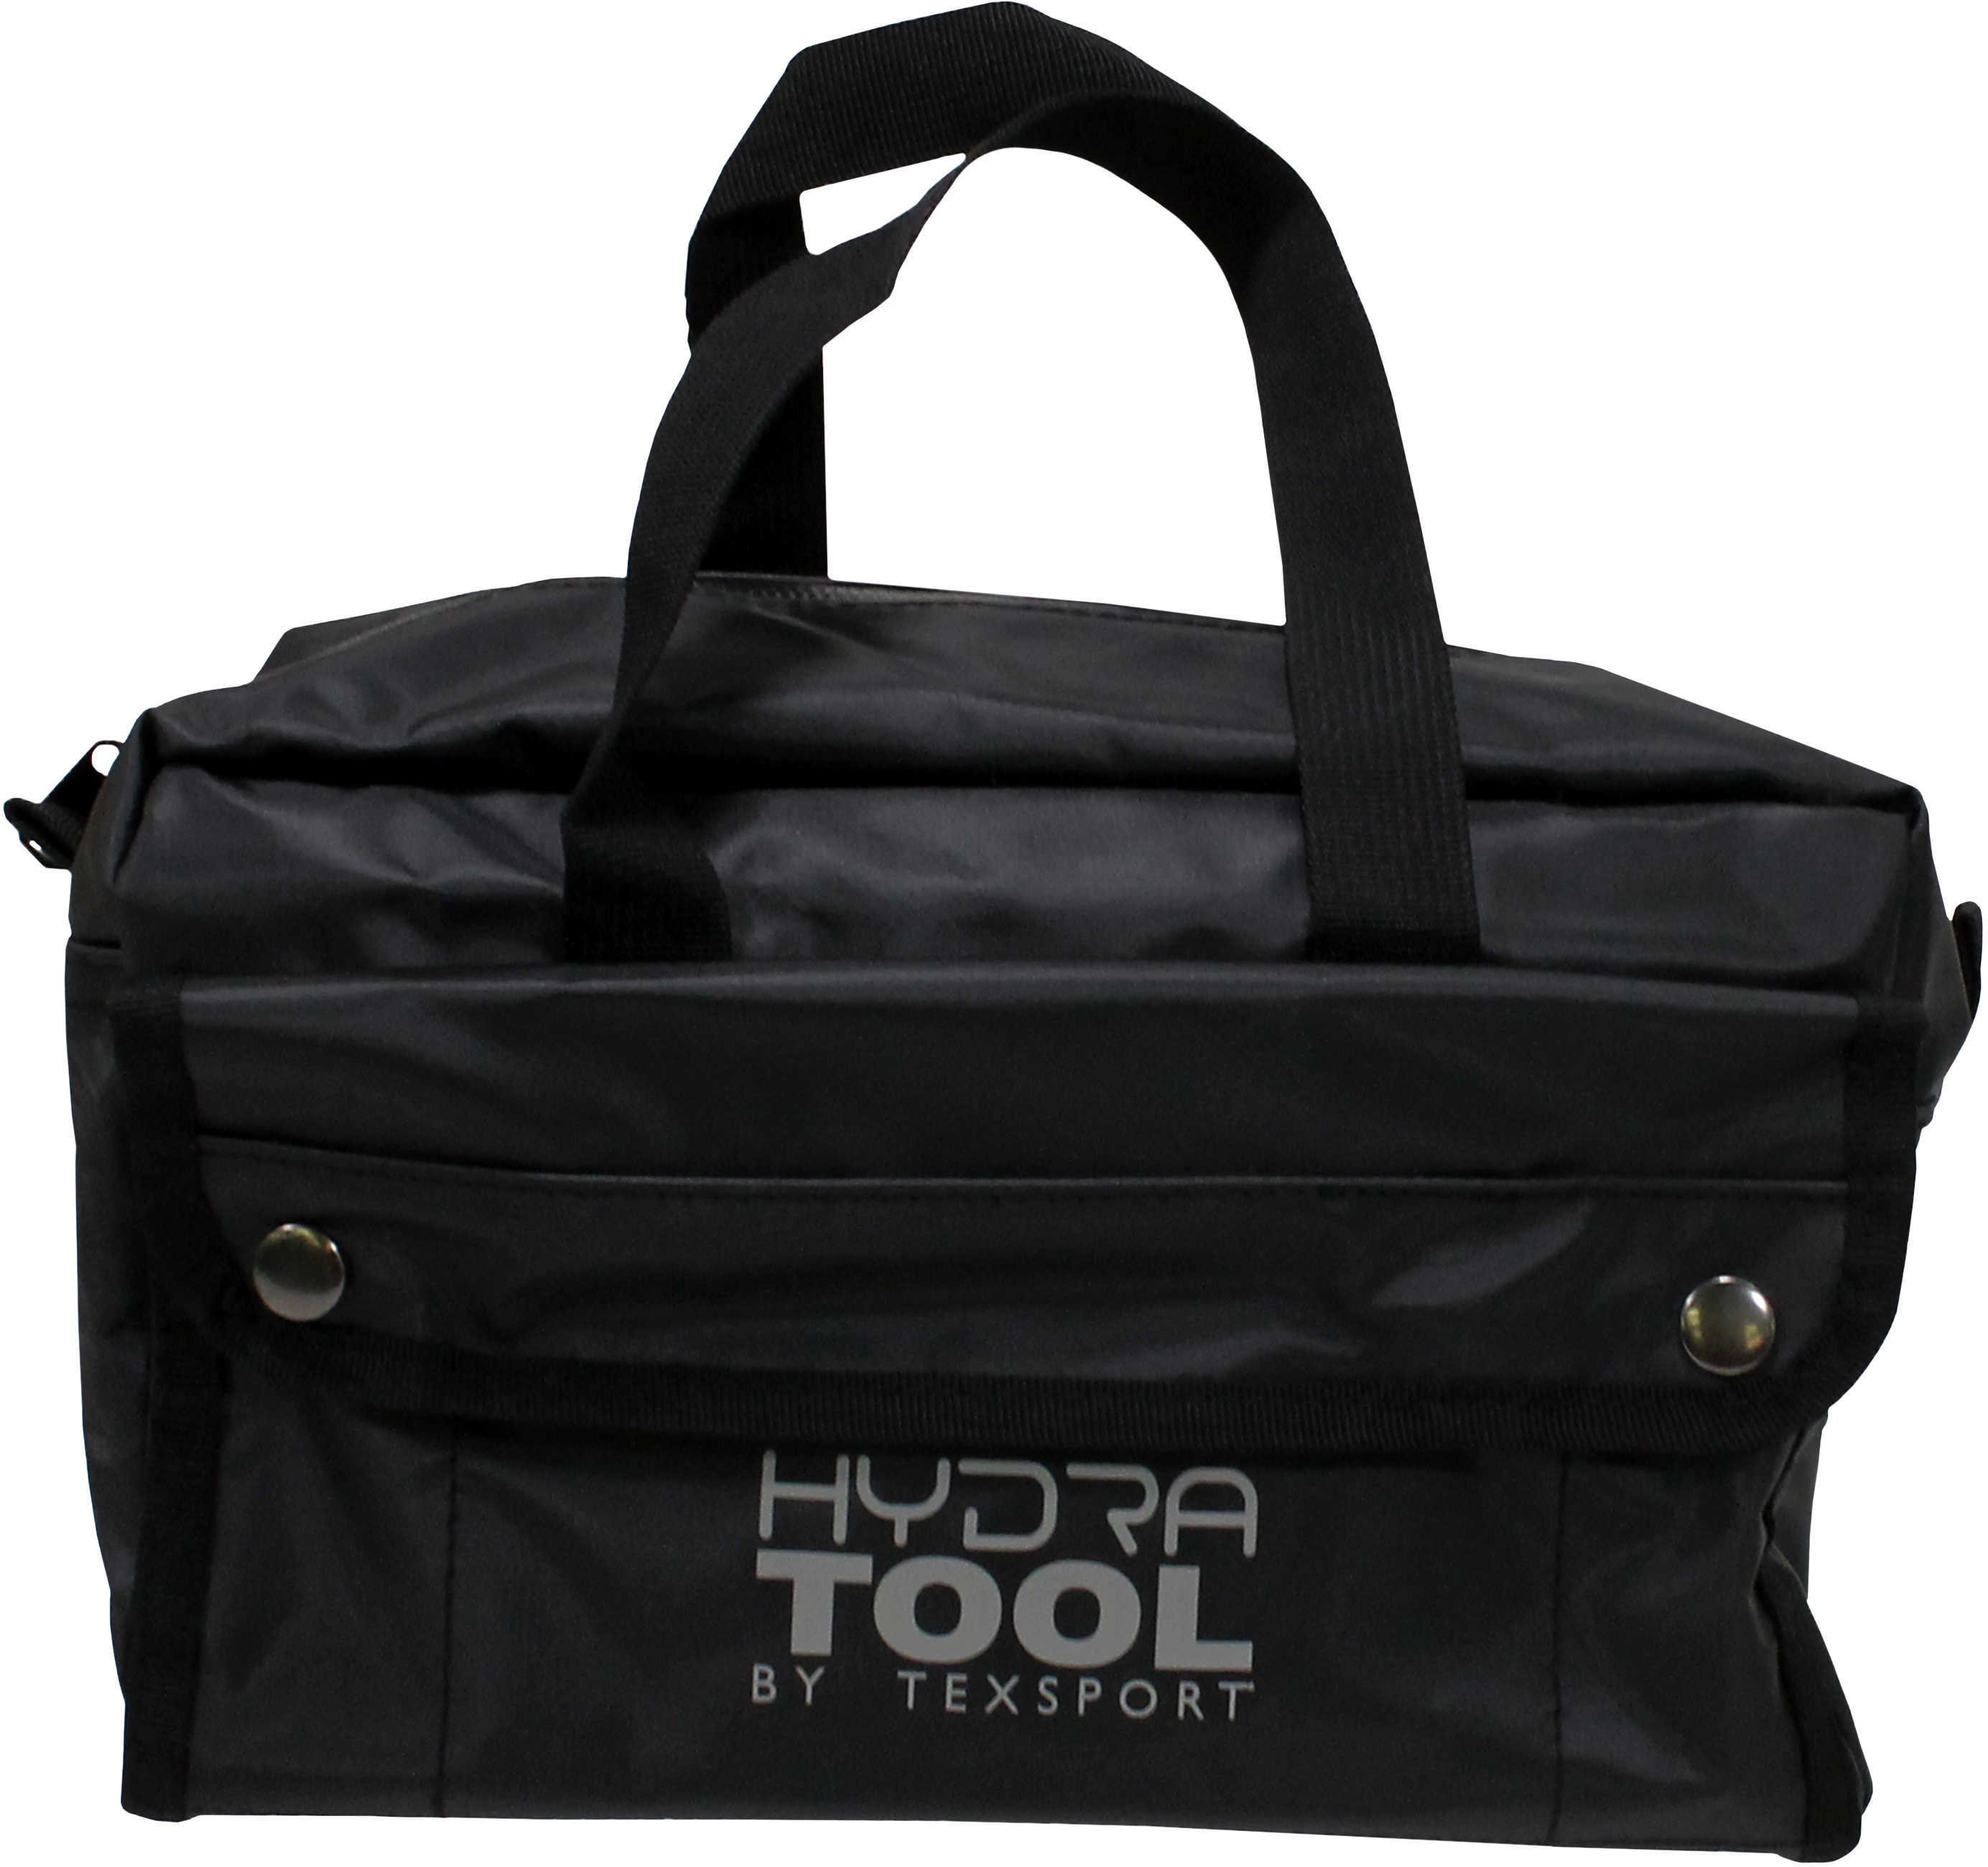 Tex Sport Hydra Tool Bag Md: 11013